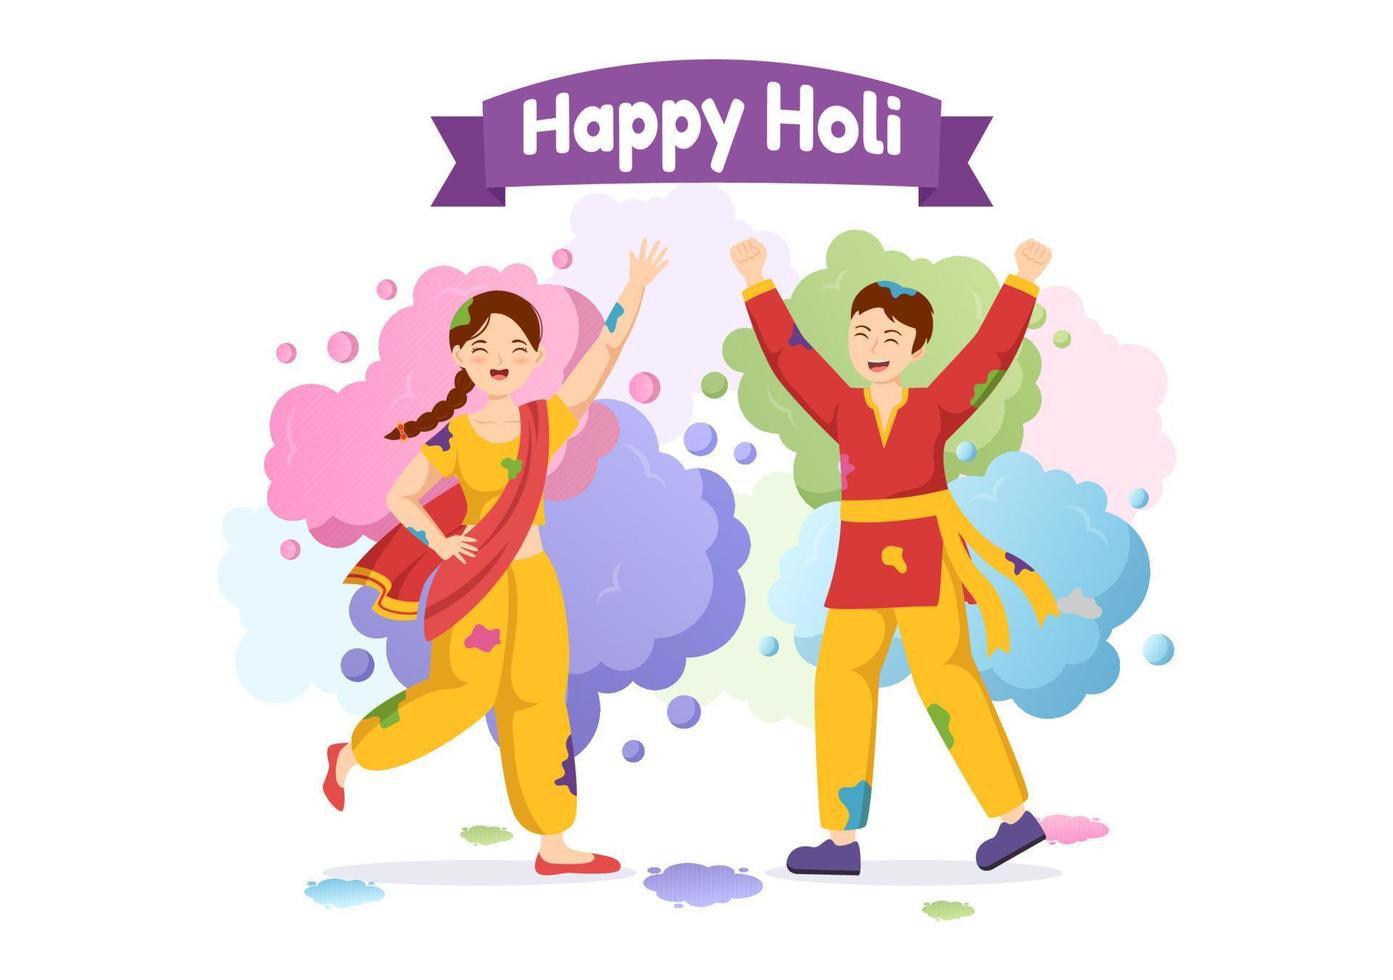 contento holi festival ilustración con vistoso maceta y polvo en hindi para web bandera o aterrizaje página en plano dibujos animados mano dibujado plantillas vector